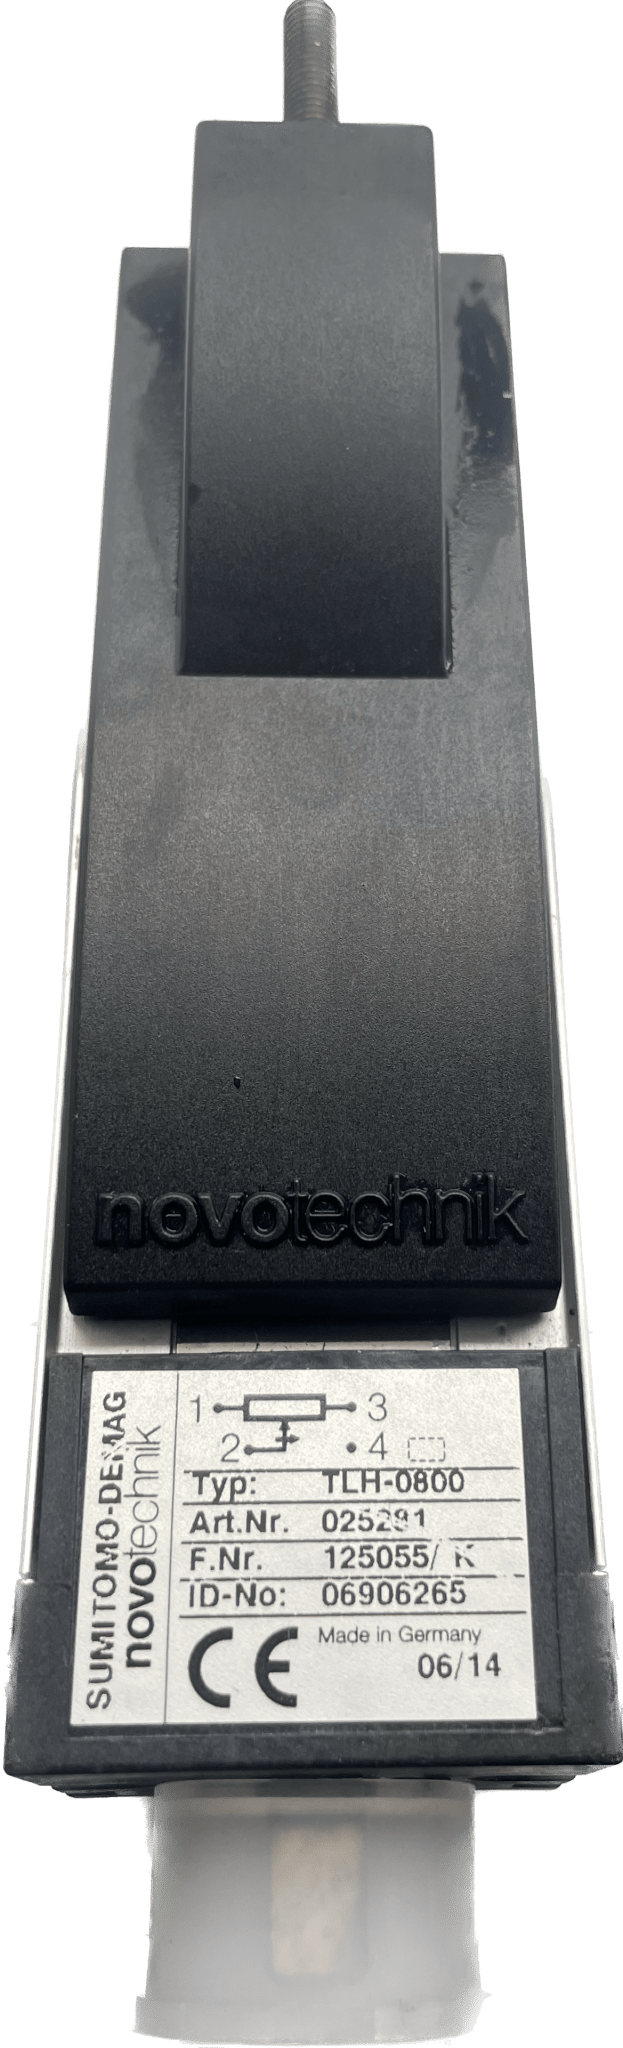 Novotechnik TLH-0800 - #product_category# | Klenk Maschinenhandel